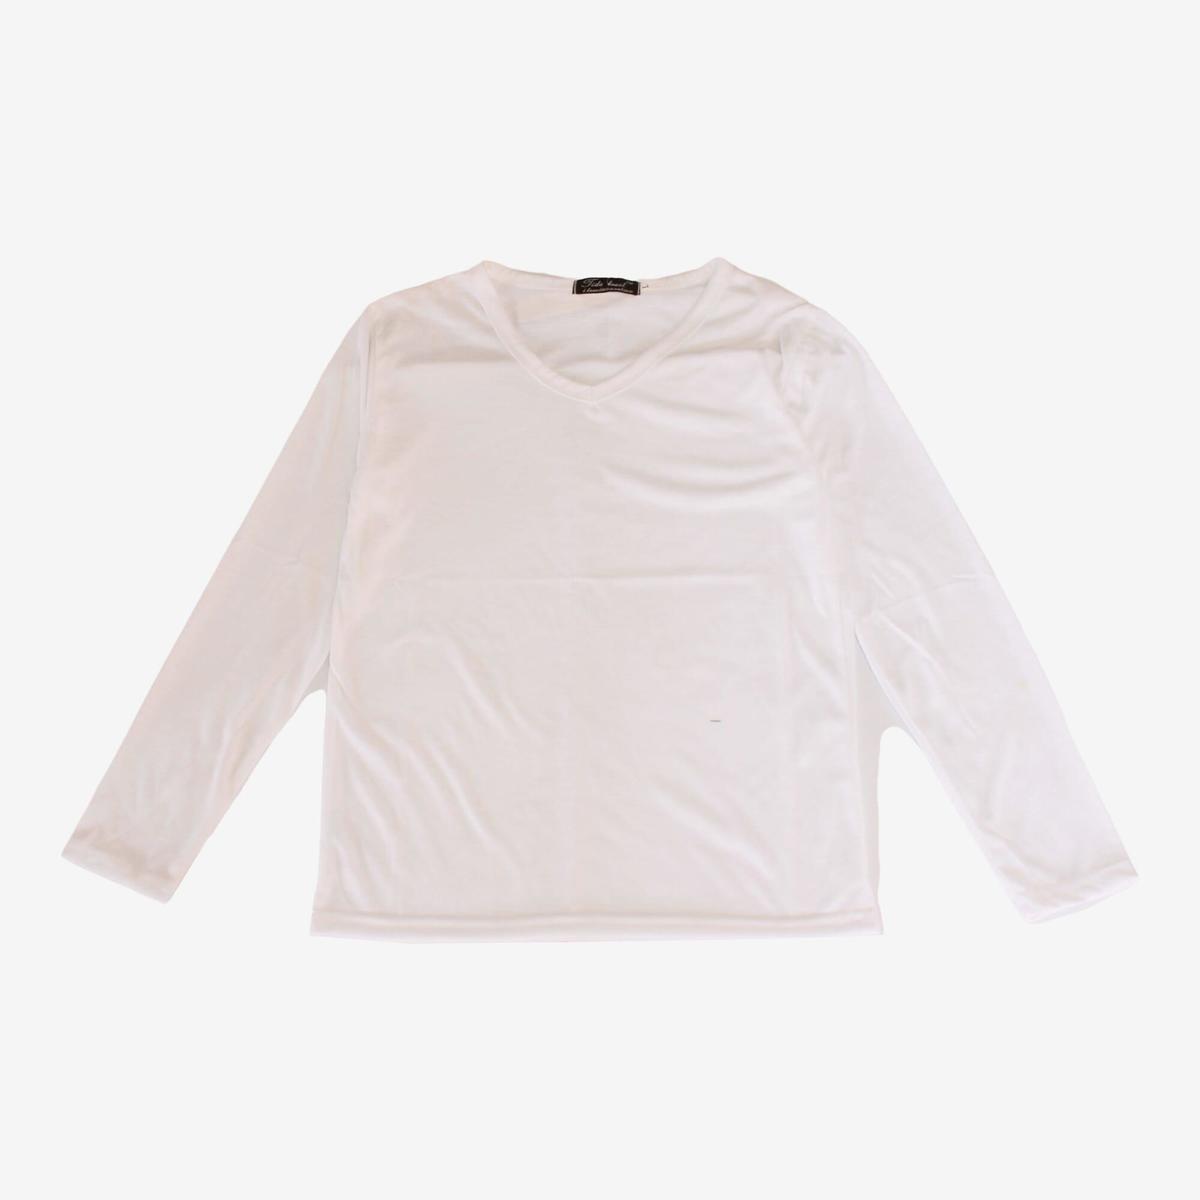 white color plain design v neck long sleeves t shirt for women